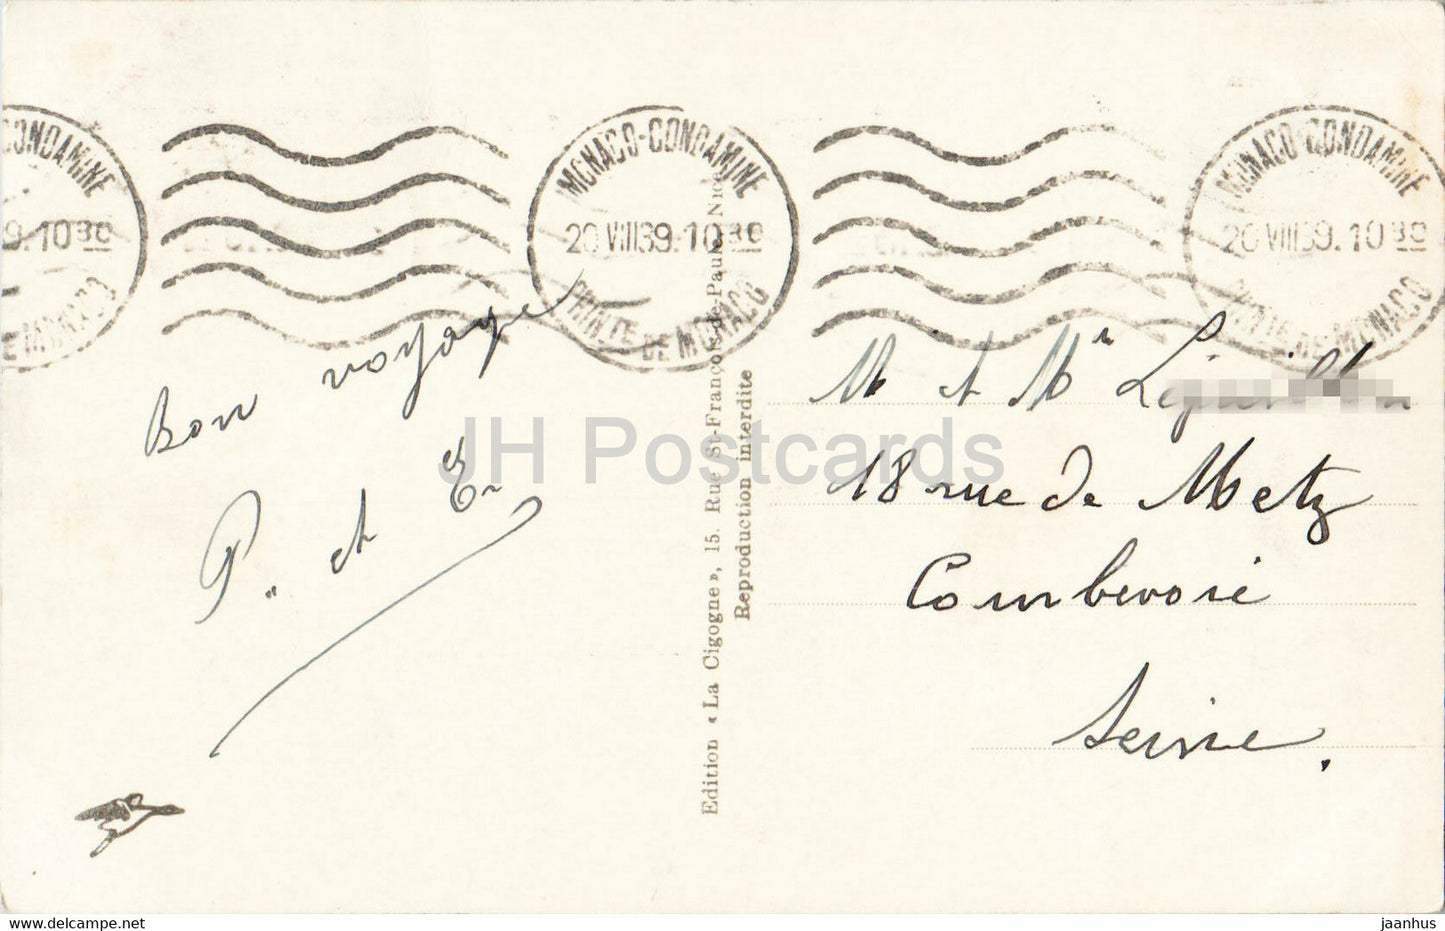 Monaco - Le Rocher - Vue sur Martin et l'Italie - 1495 - carte postale ancienne - 1939 - Monaco - oblitéré